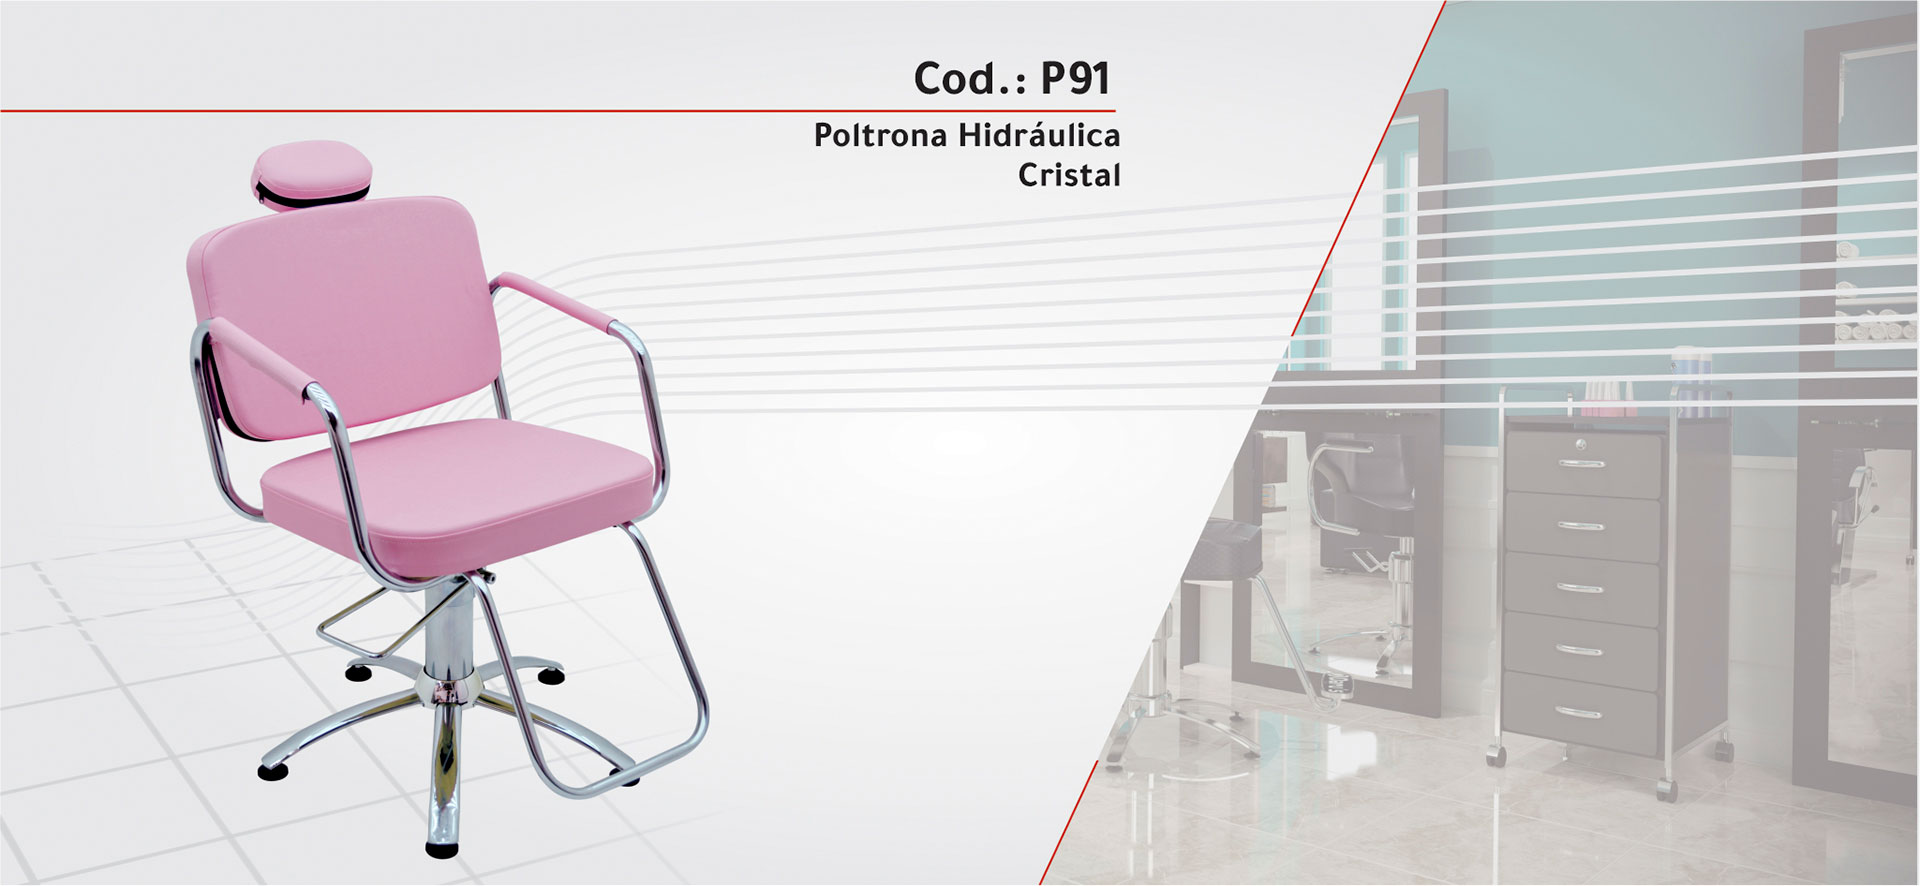 P91 - Poltrona Hidráulica Cristal Fixa